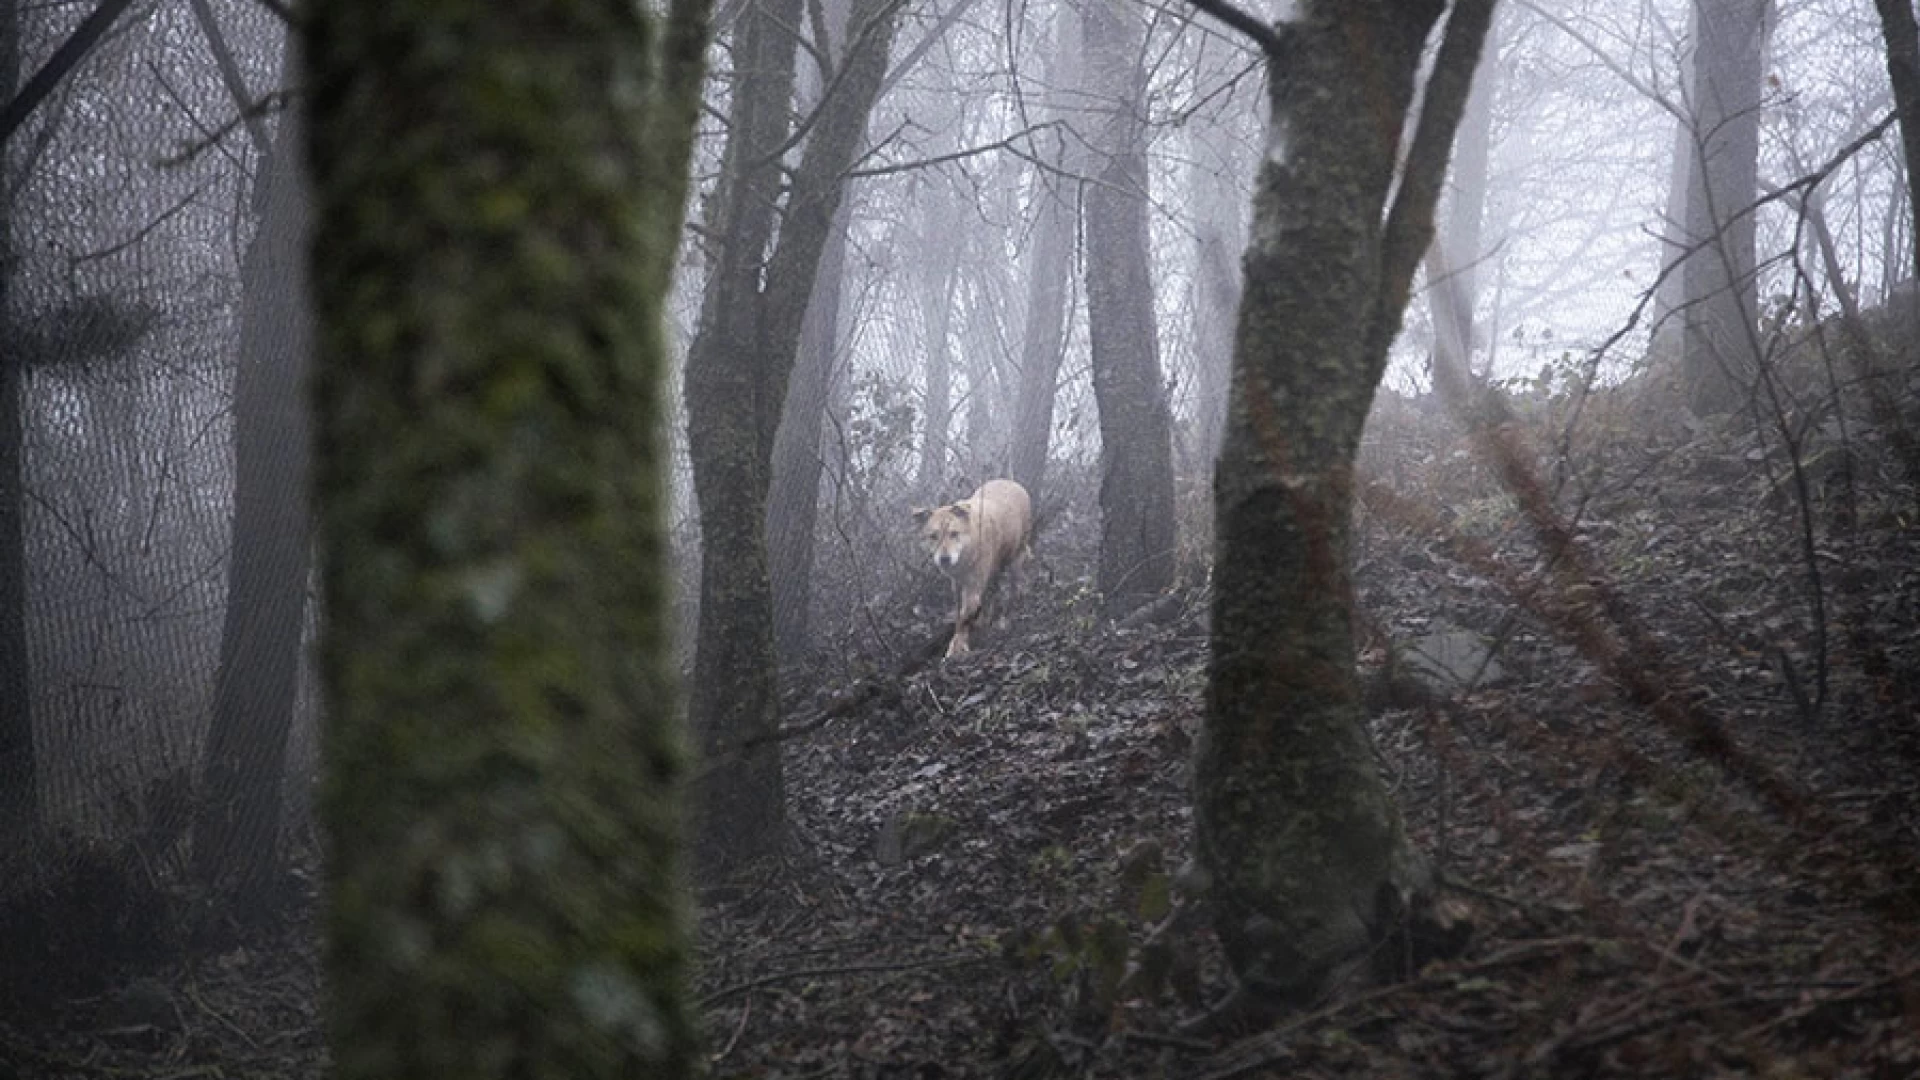 Colli a Volturno:lupi nuovi avvistamenti di esemplari nei pressi del fiume Volturno. In aumento la popolazione presente sul territorio.